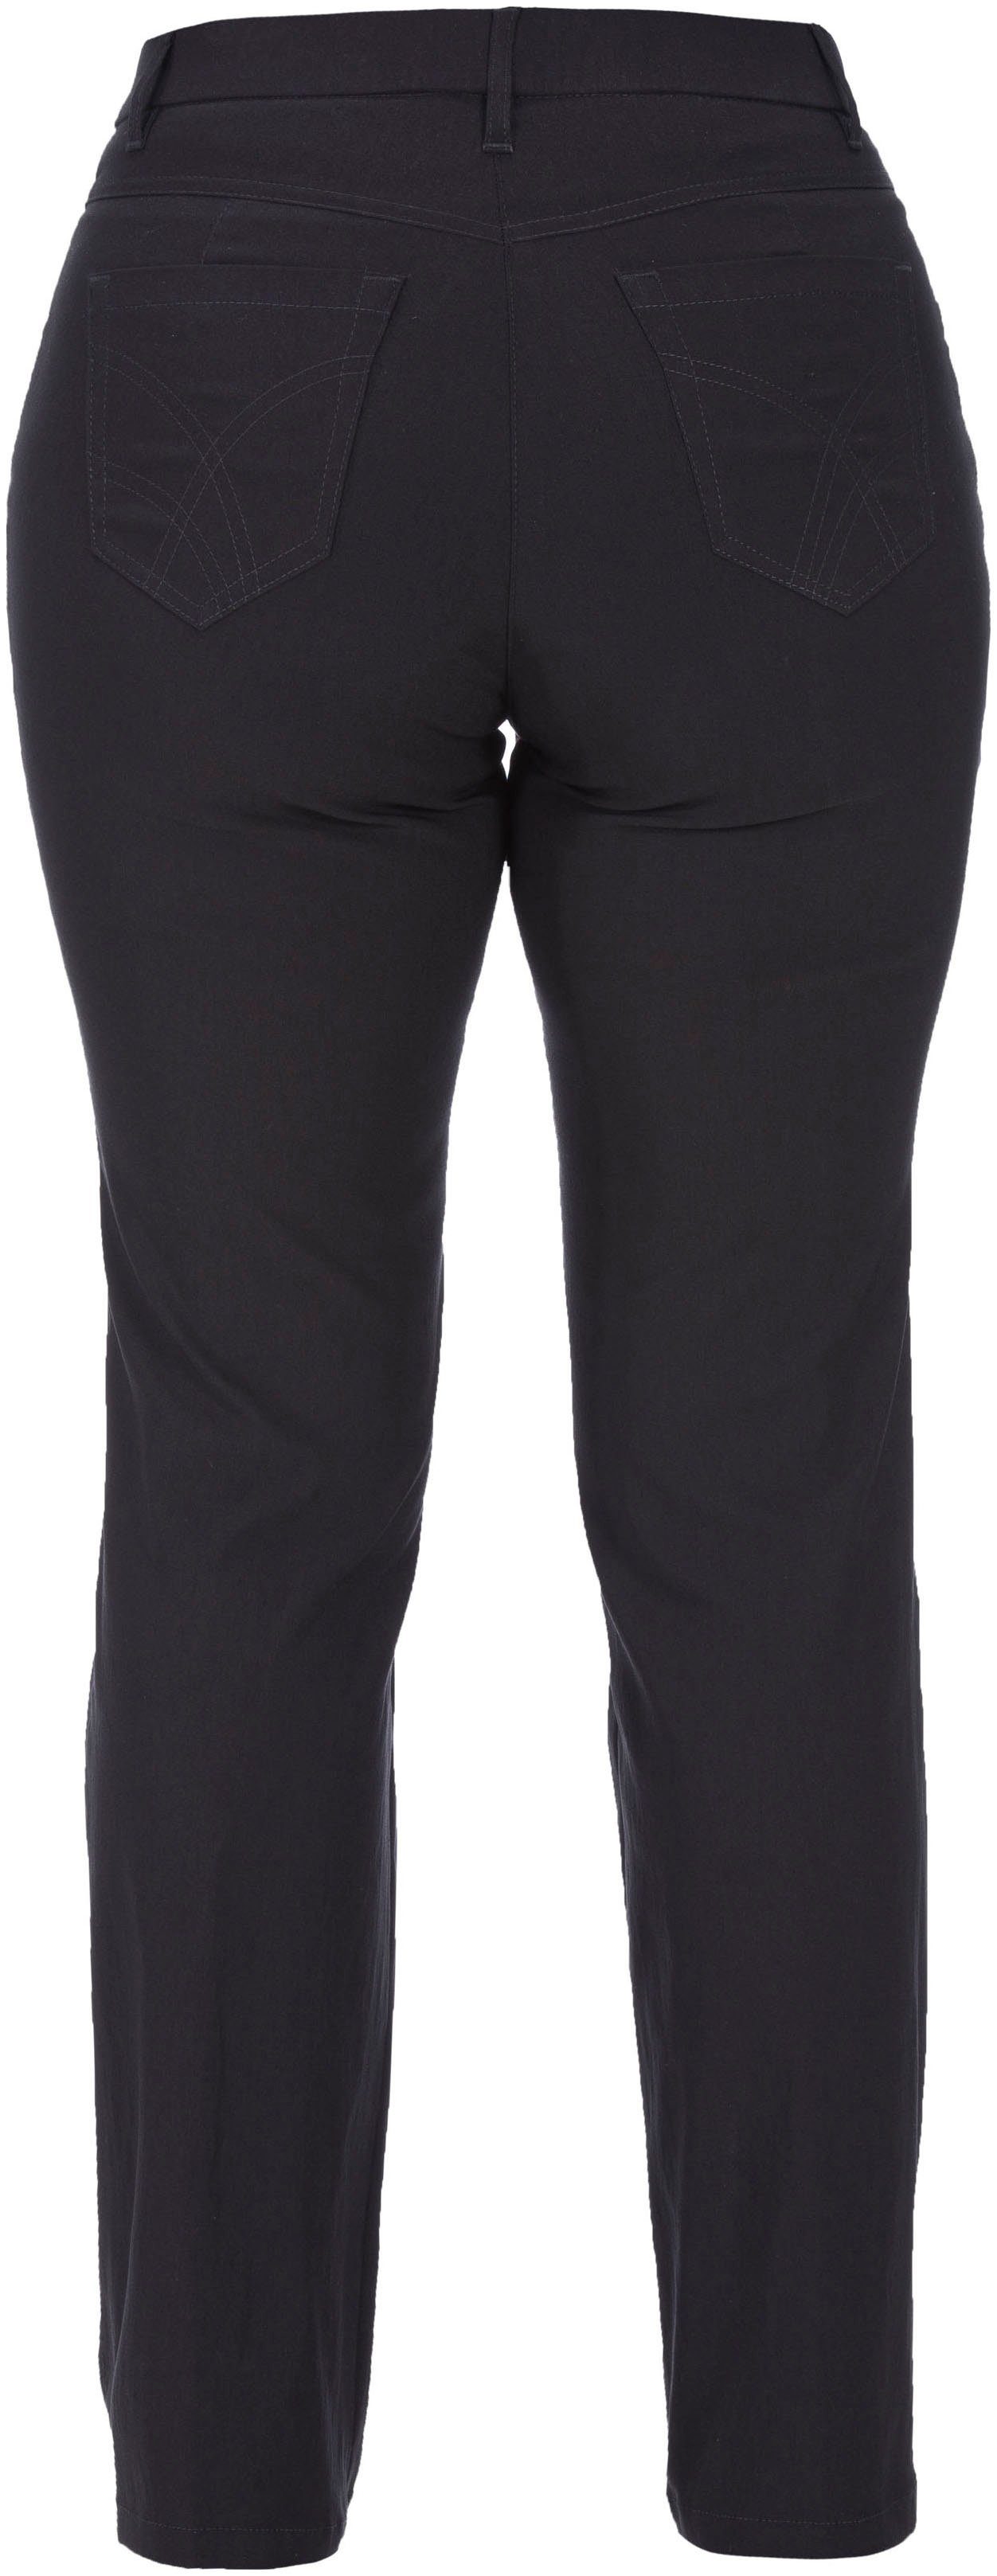 KjBRAND 5-Pocket-Hose Betty Bengaline in bequemer schwarz Form